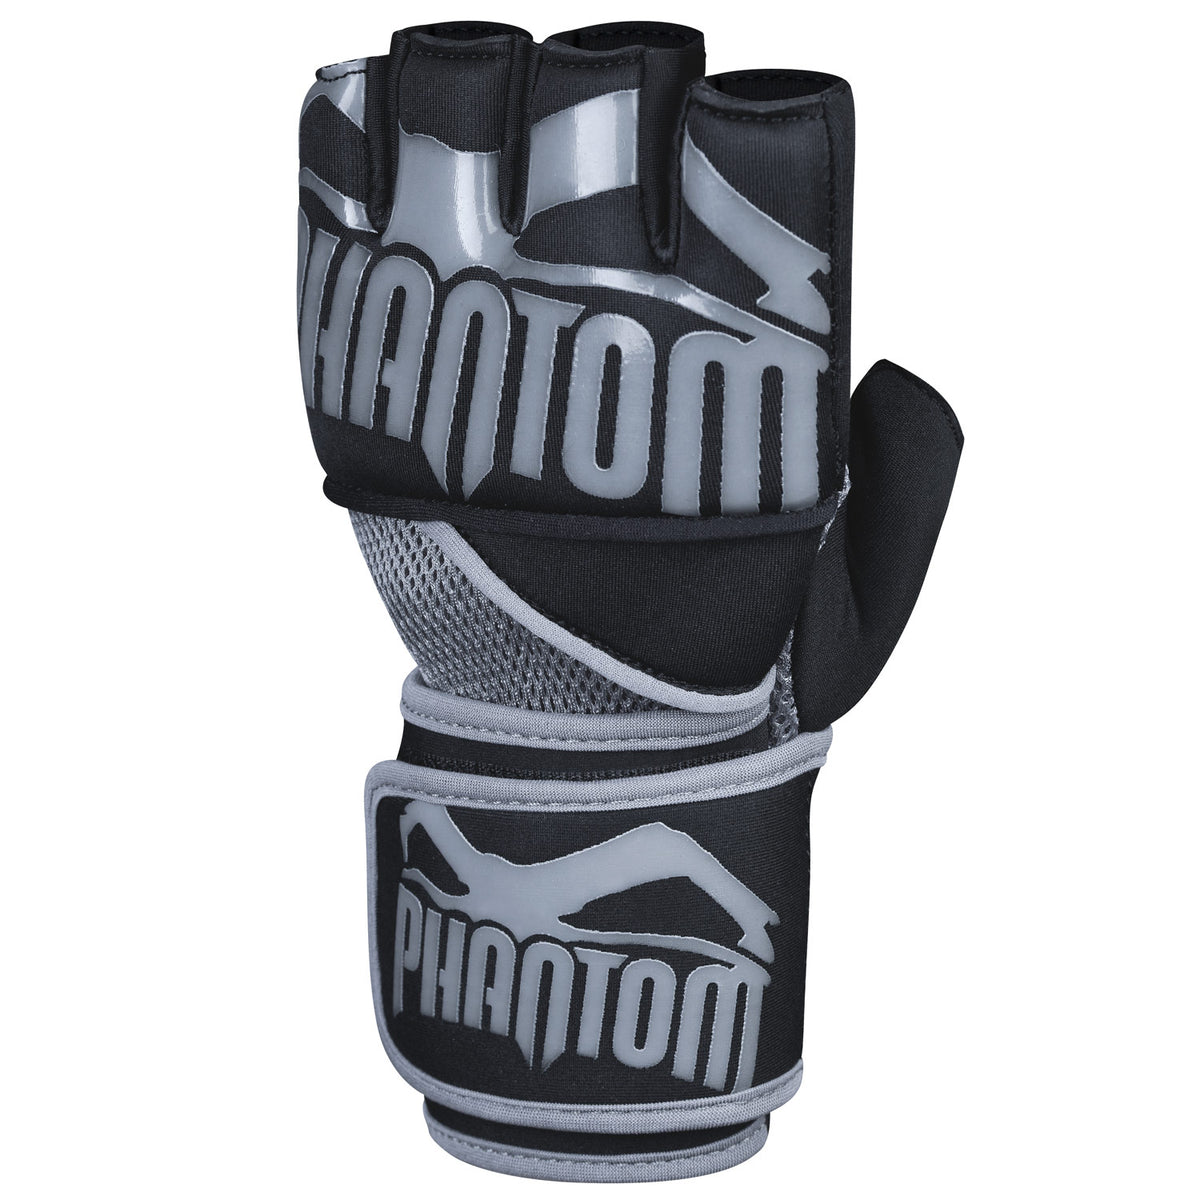 Die Phantom Gel Neopren Handschuhe für dein Kampfsporttraining. Produziert aus hochwertigem Neopren und Silikon. SIe verfügen über eine lange Handgelenksbandage für optimalen Support.